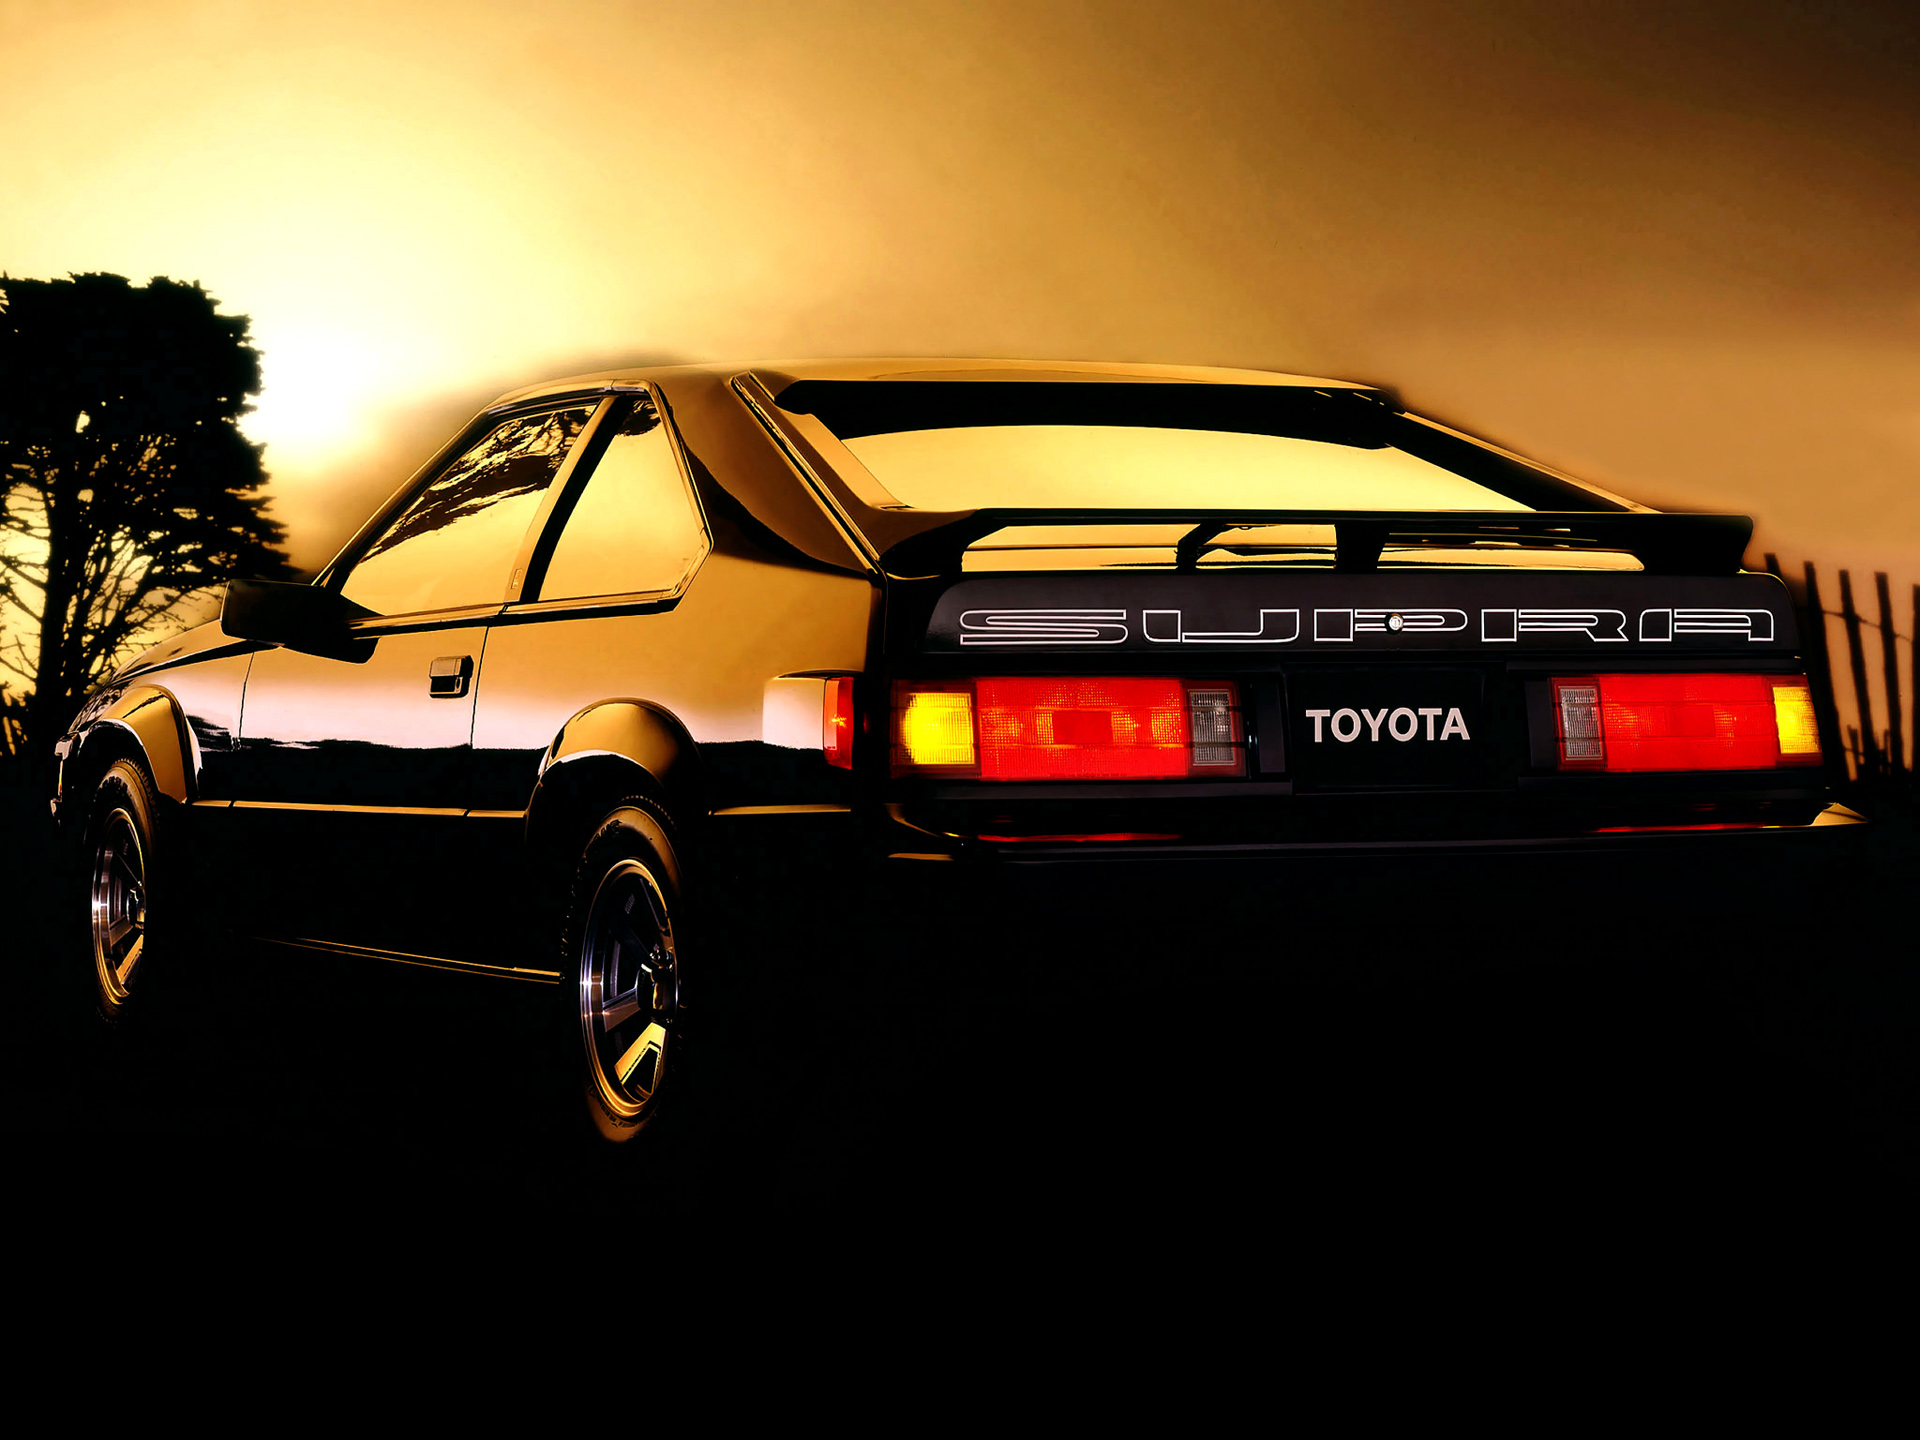  1984 Toyota Celica Supra Wallpaper.